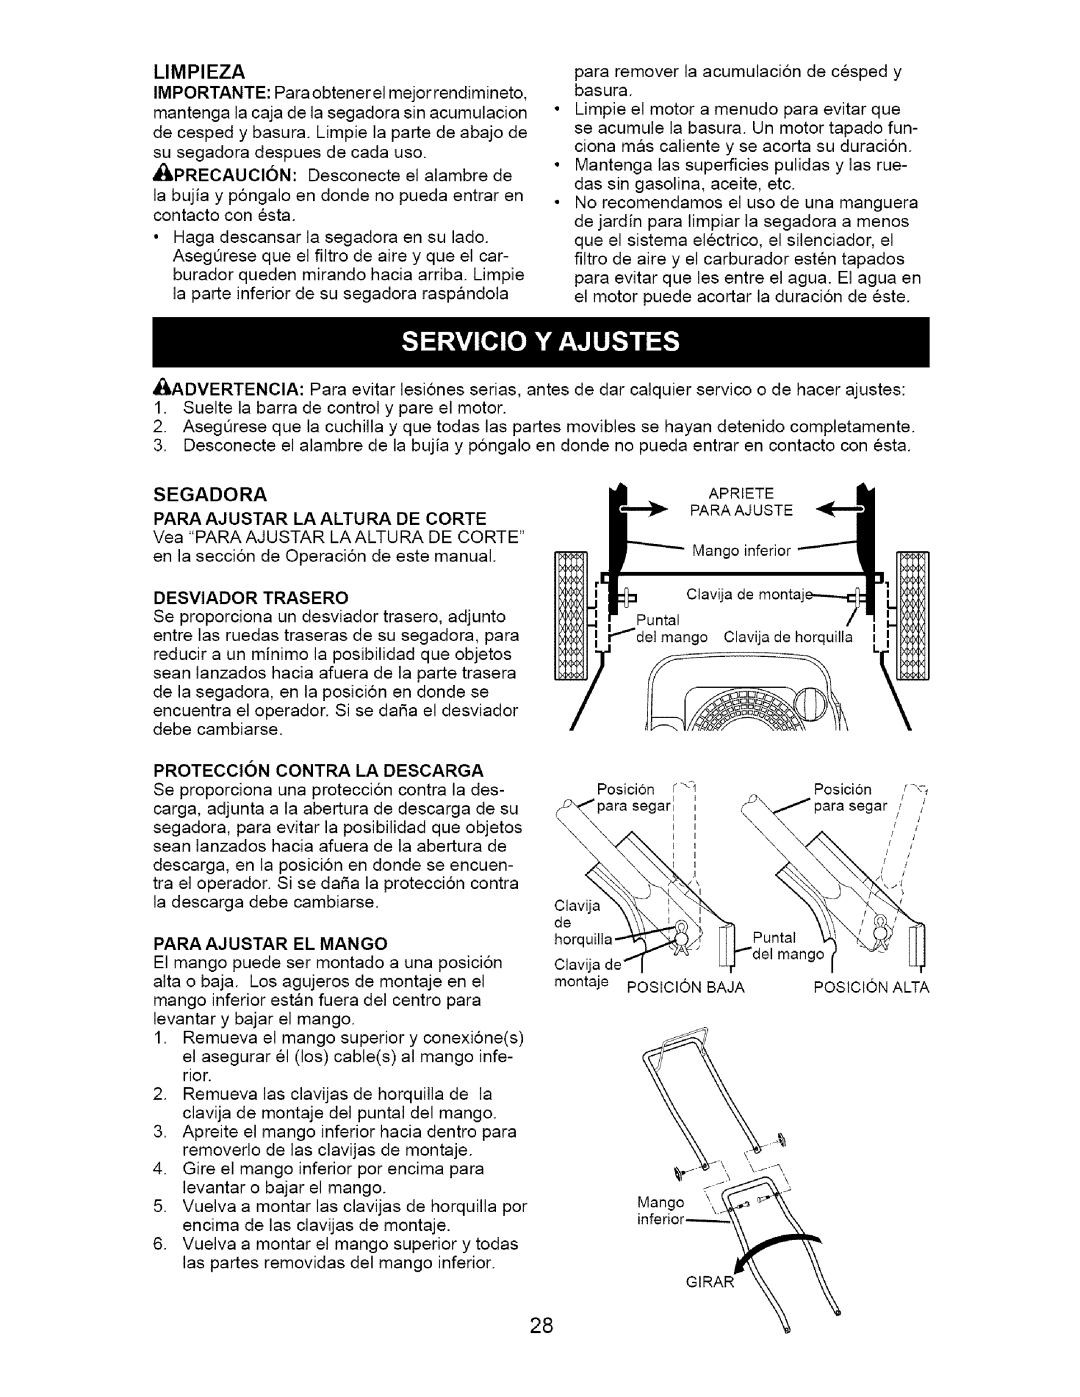 Craftsman 917.385122 manual Para Ajustar La Altura De Corte 